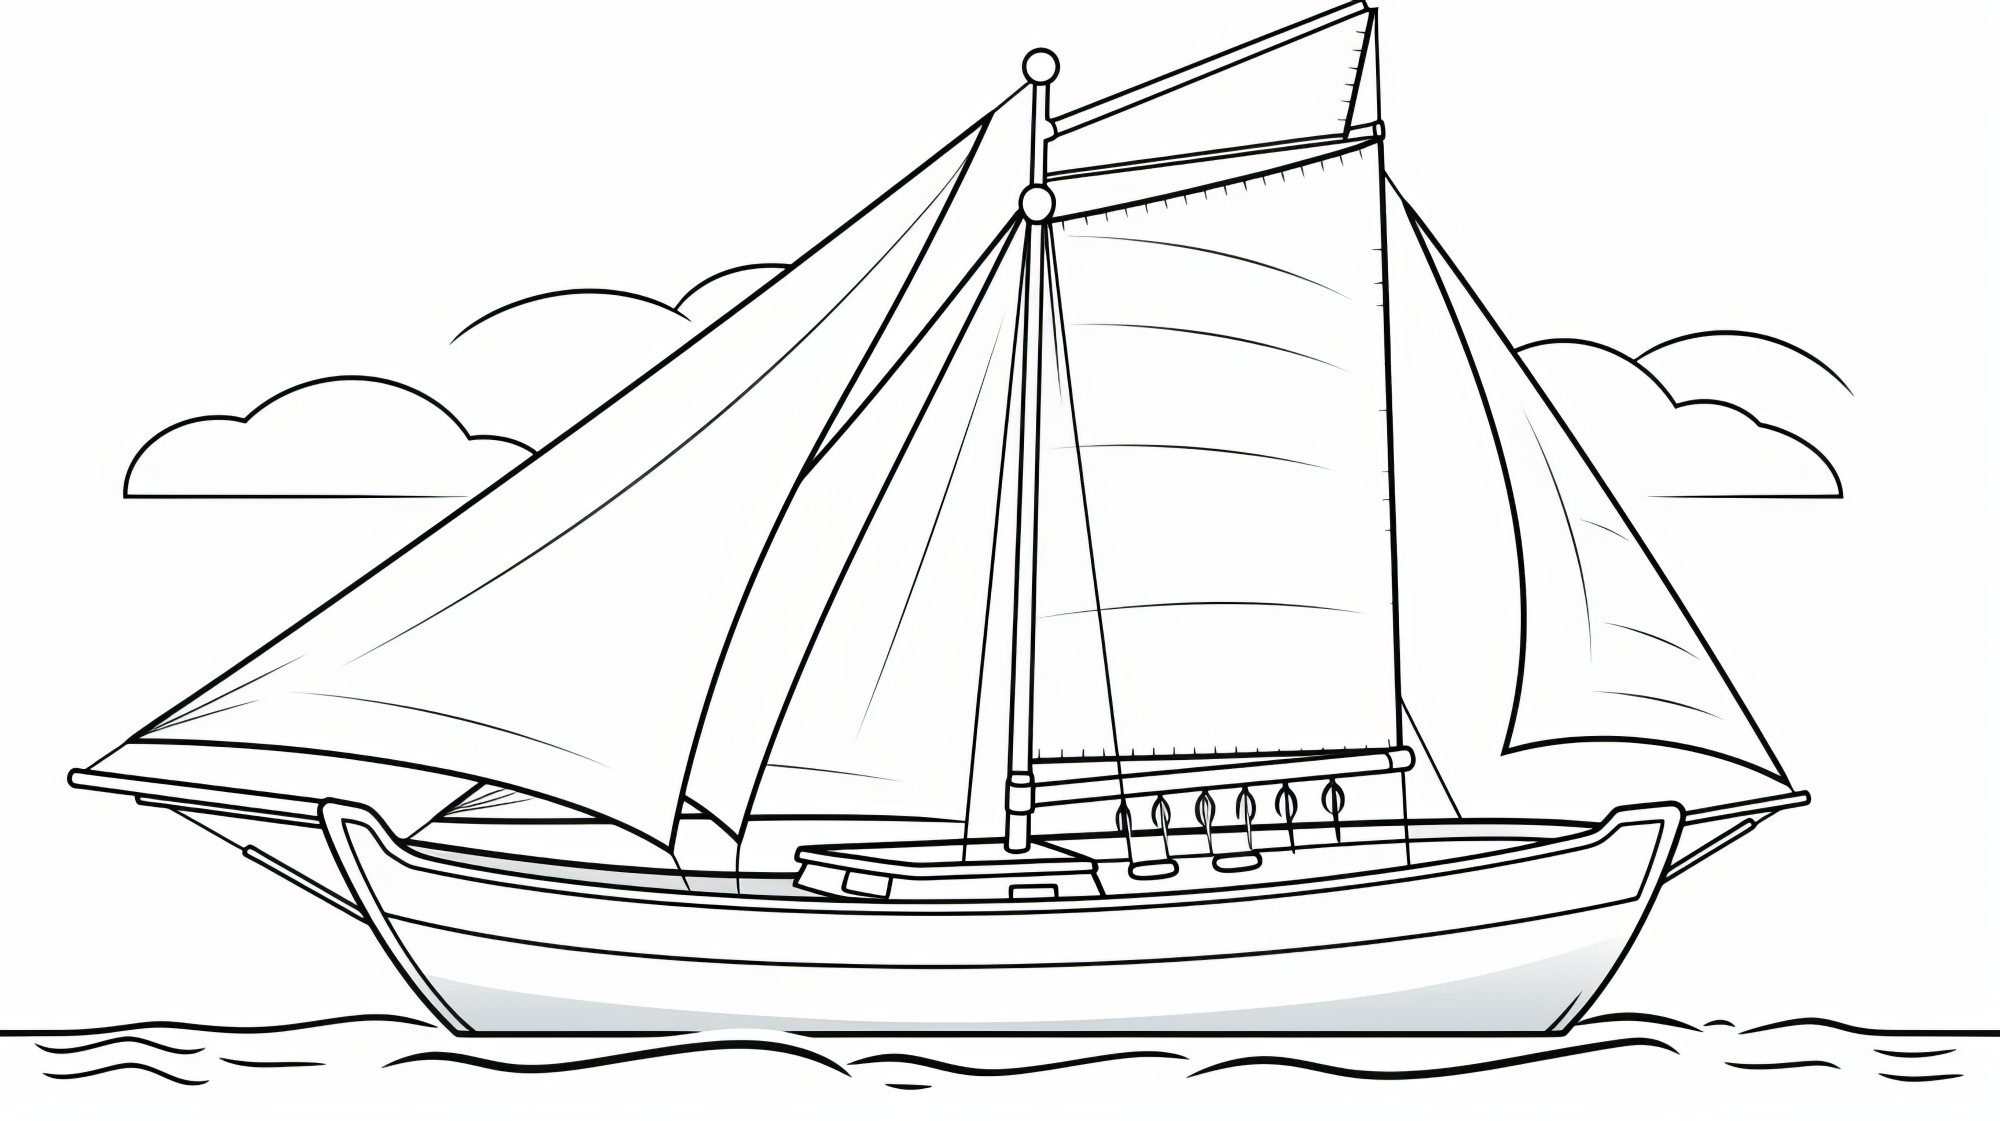 Раскраска для детей: парусная яхта в море